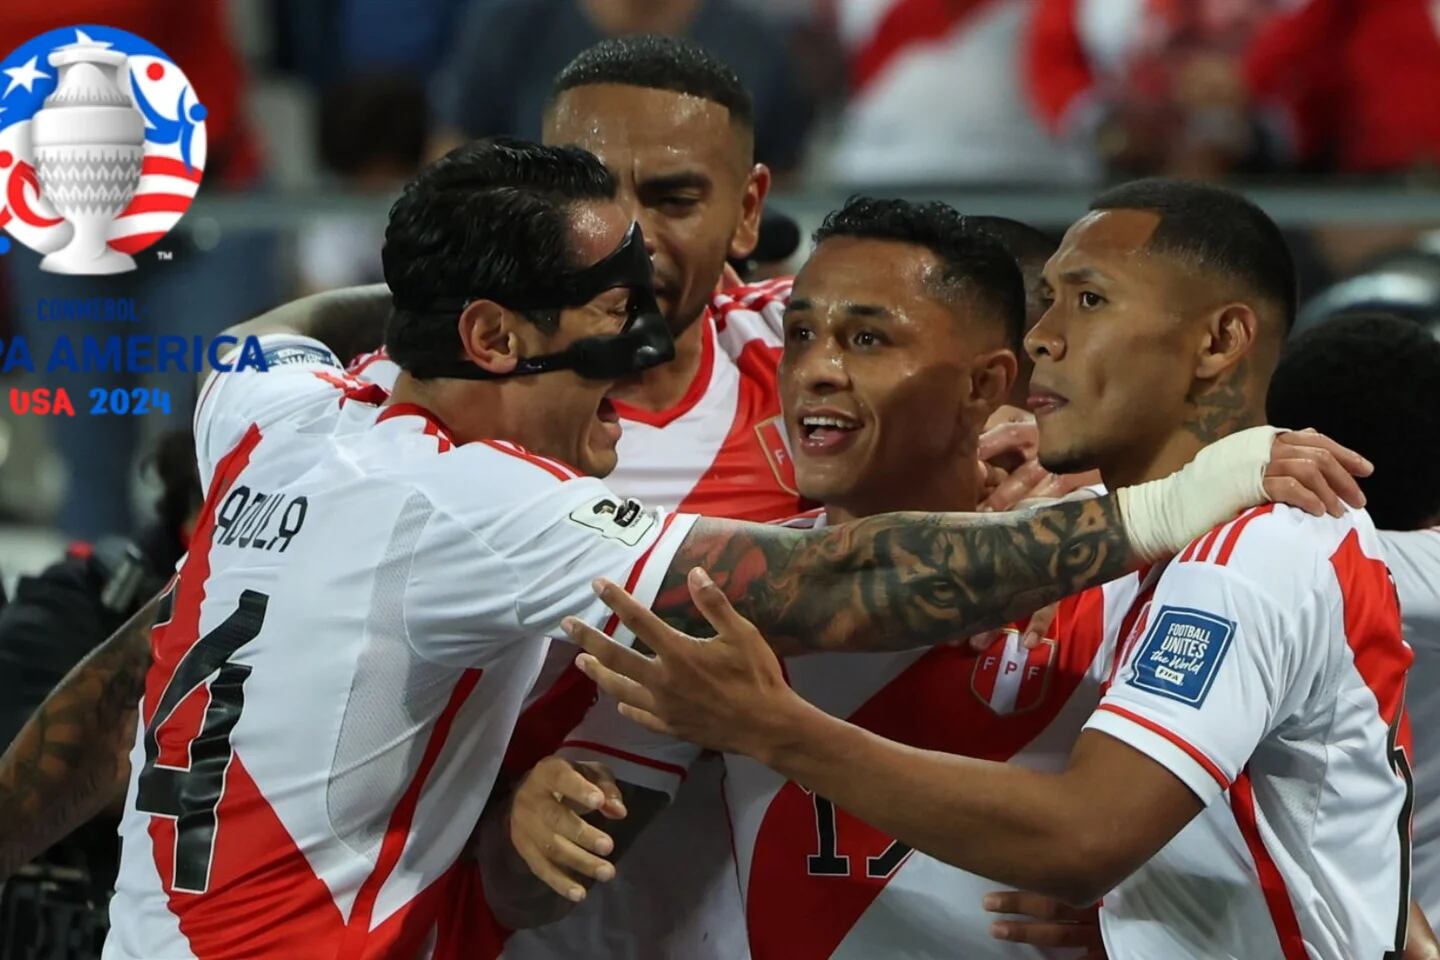 Perú enfrentará a Argentina, Brasil y Uruguay en la Copa América Fútbol  Playa, Noticias